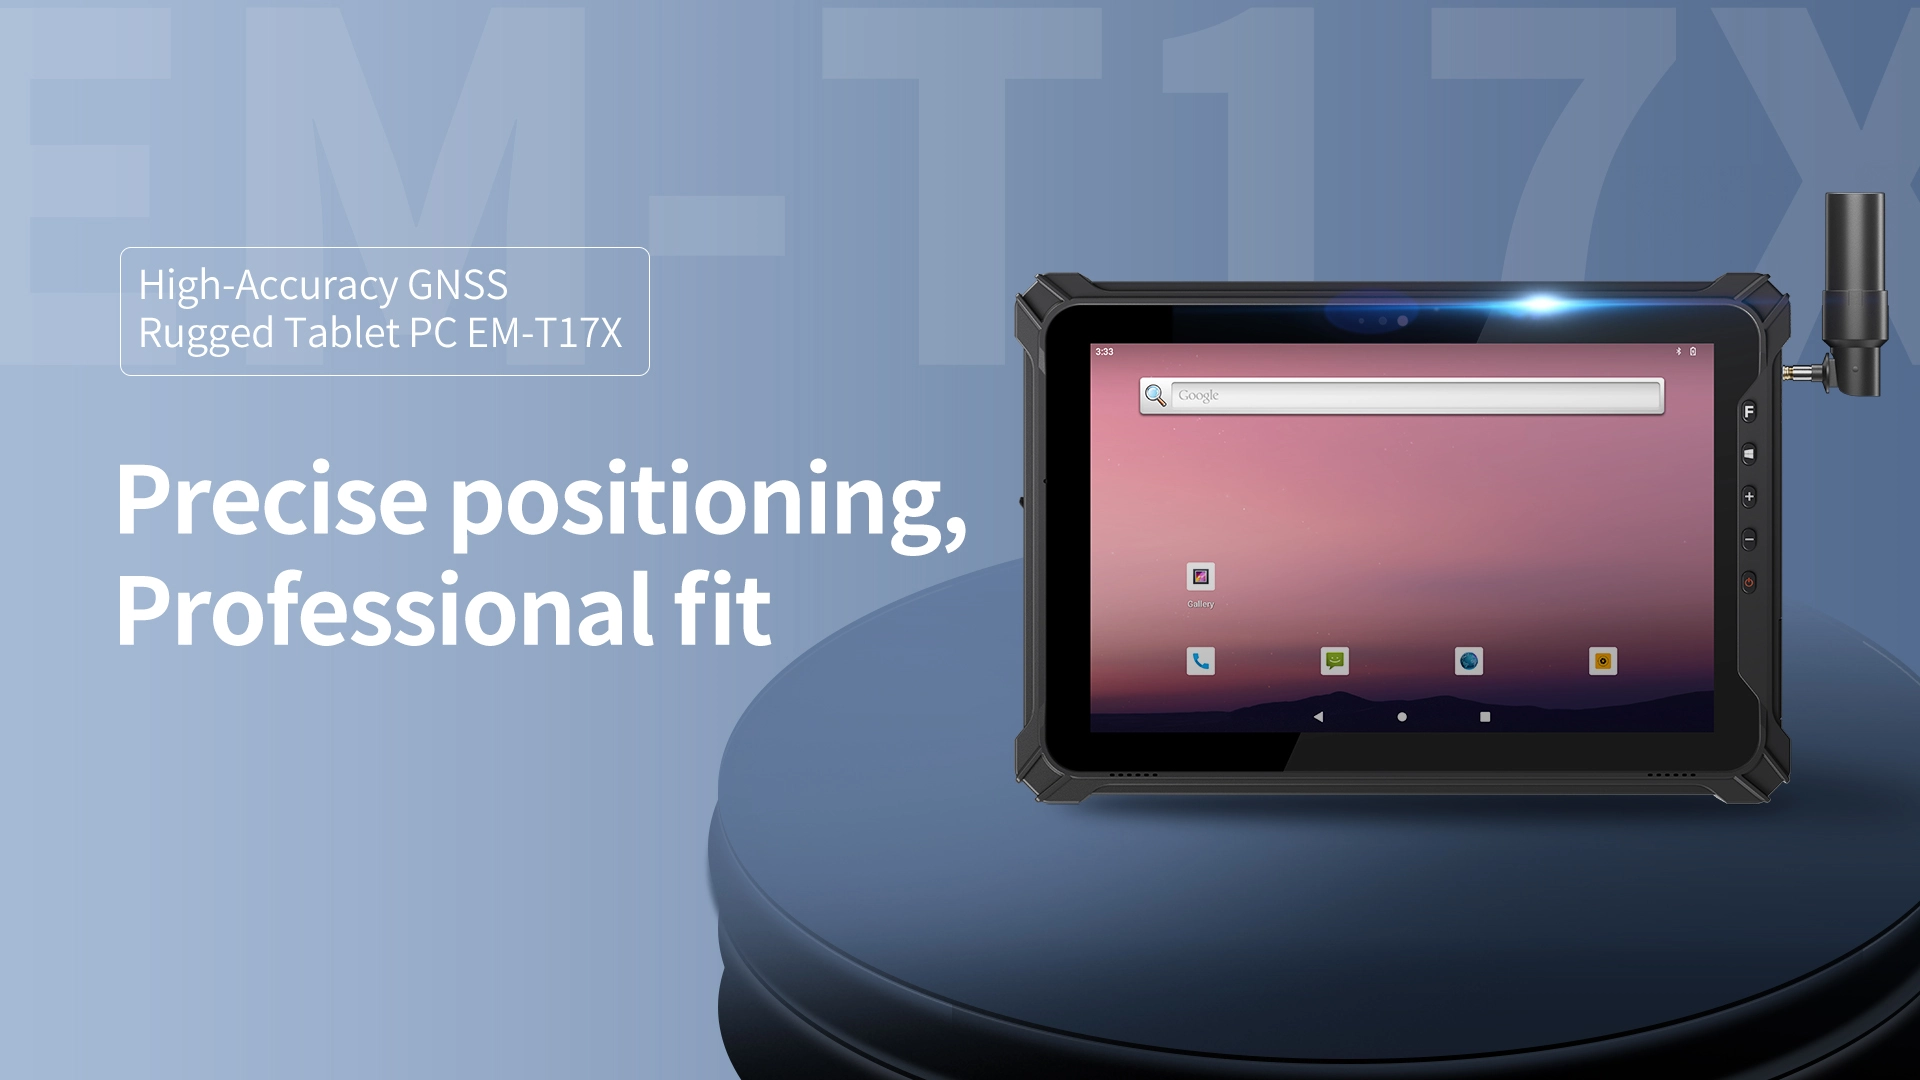 Réalisez un positionnement haute précision au niveau du GNSS CM! Quelle est la puissance de l'application de la tablette PC RTK robuste d'Emdoor Information?